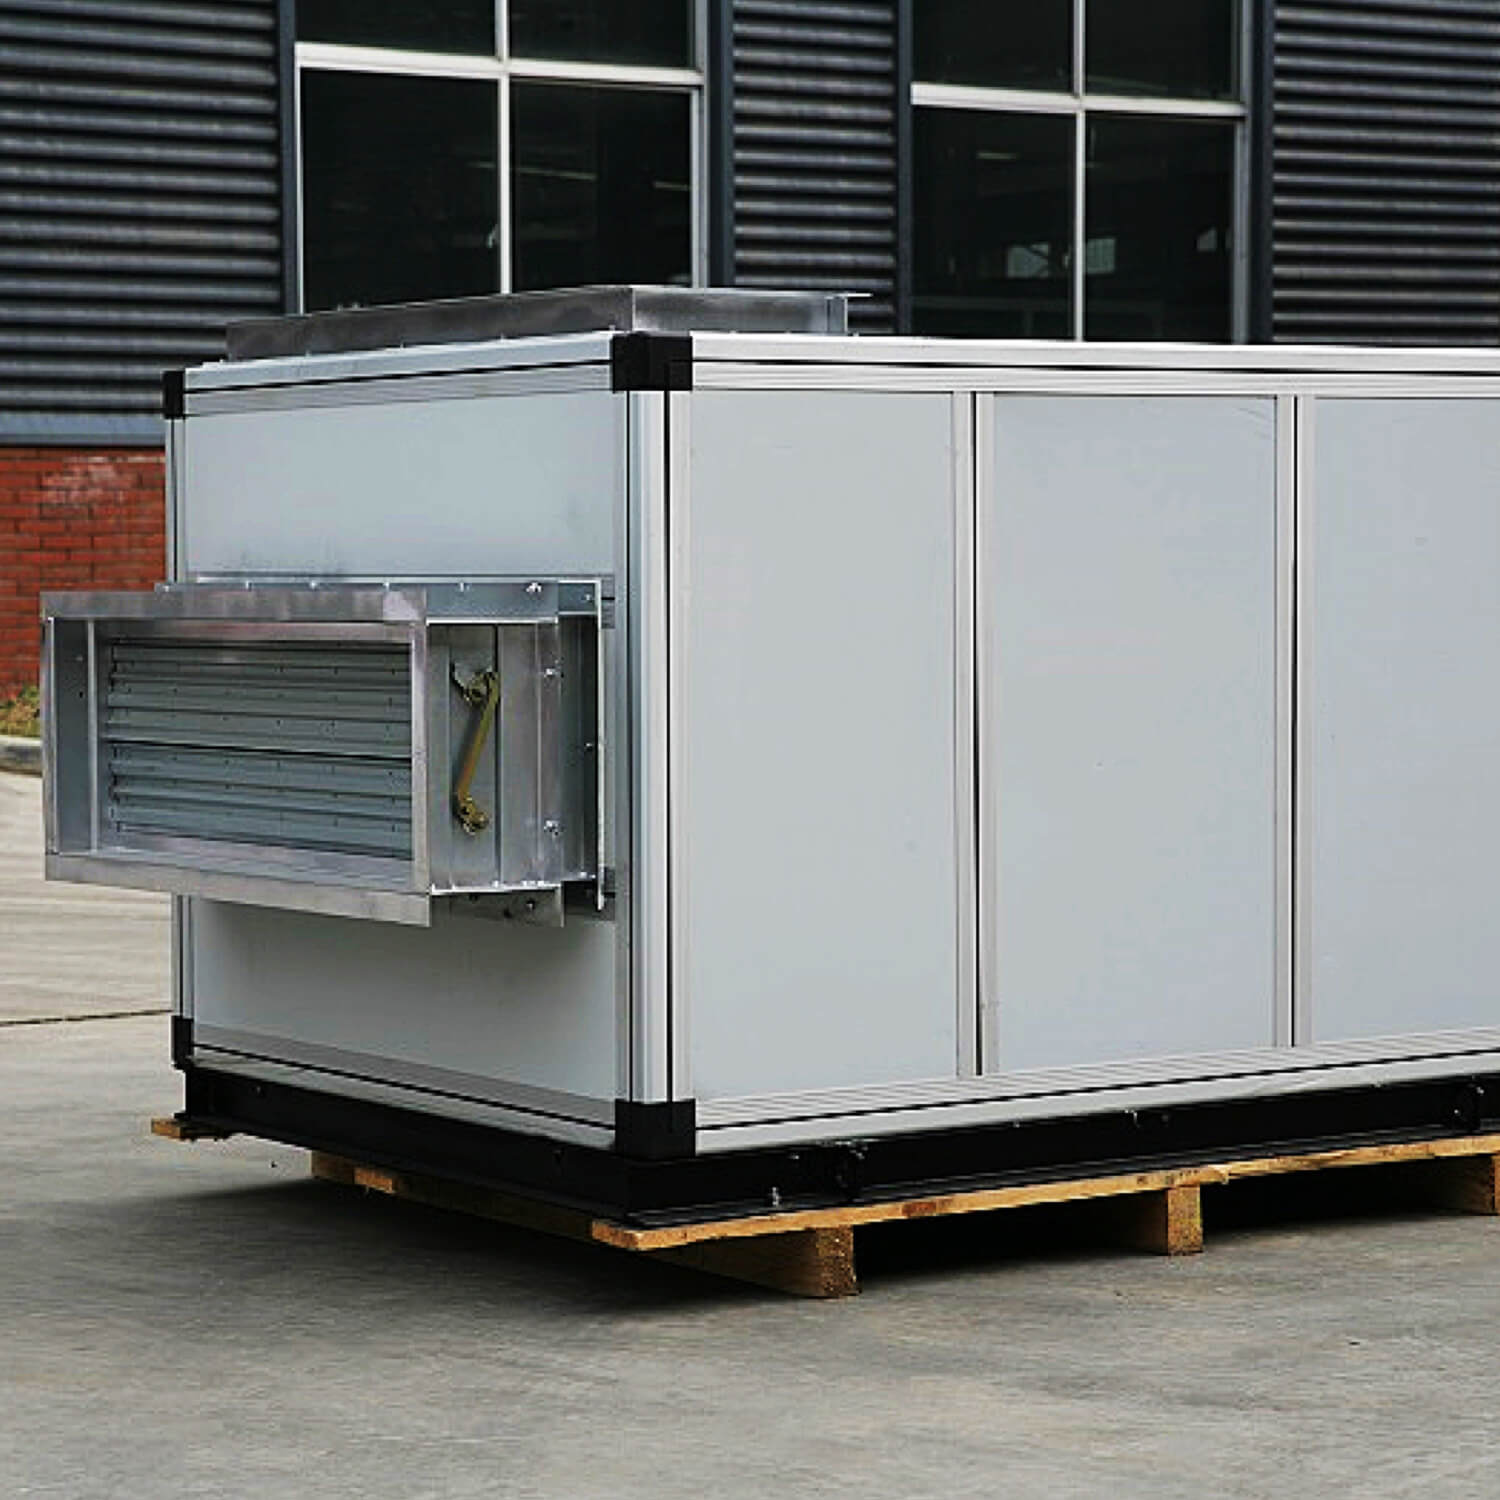 Fabricación profesional de unidades de tratamiento de aire combinadas industriales.